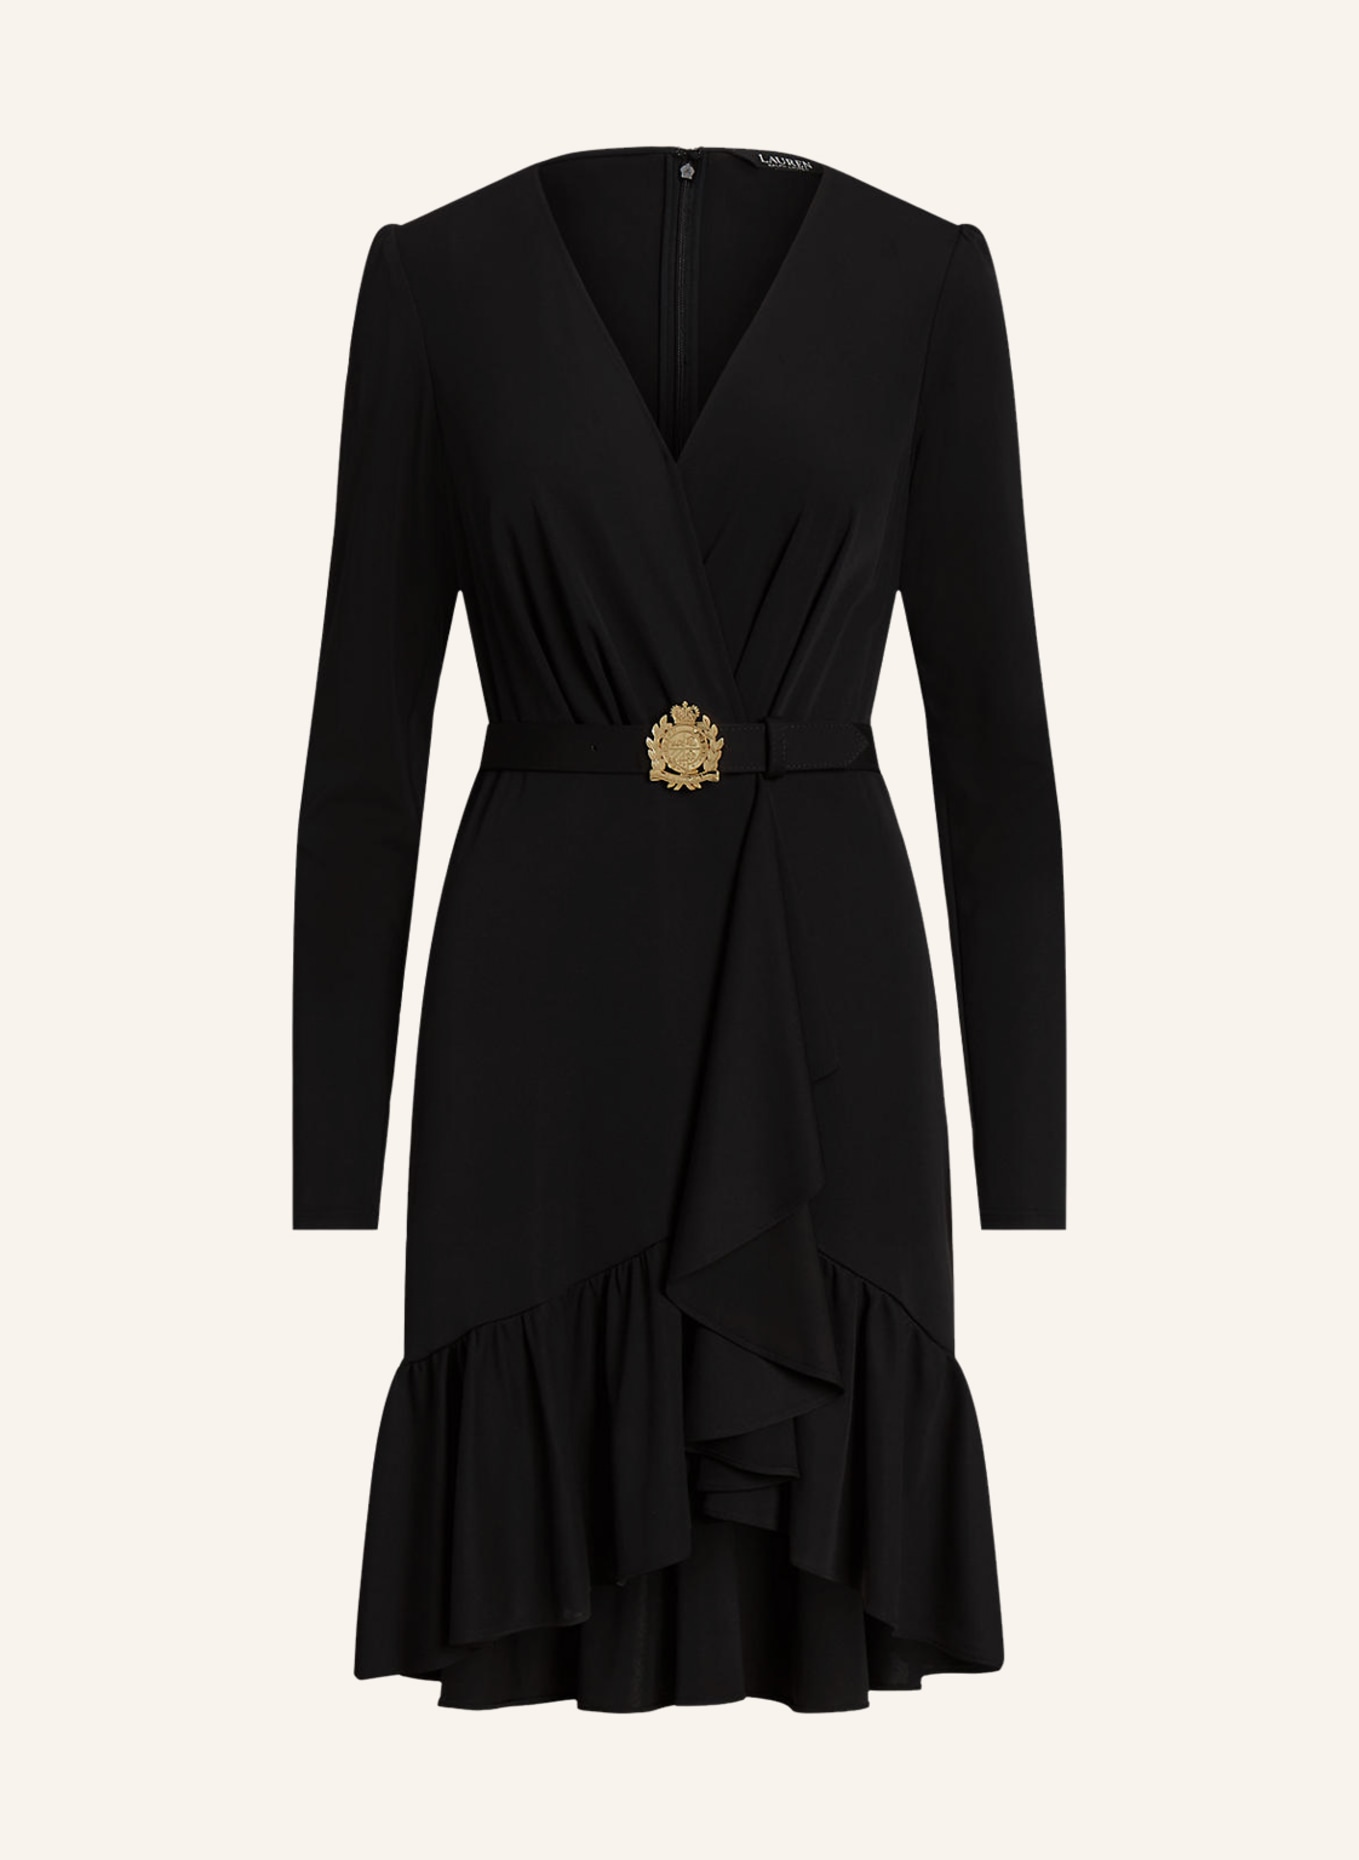 LAUREN RALPH LAUREN Jersey dress with ruffles, Color: BLACK (Image 1)